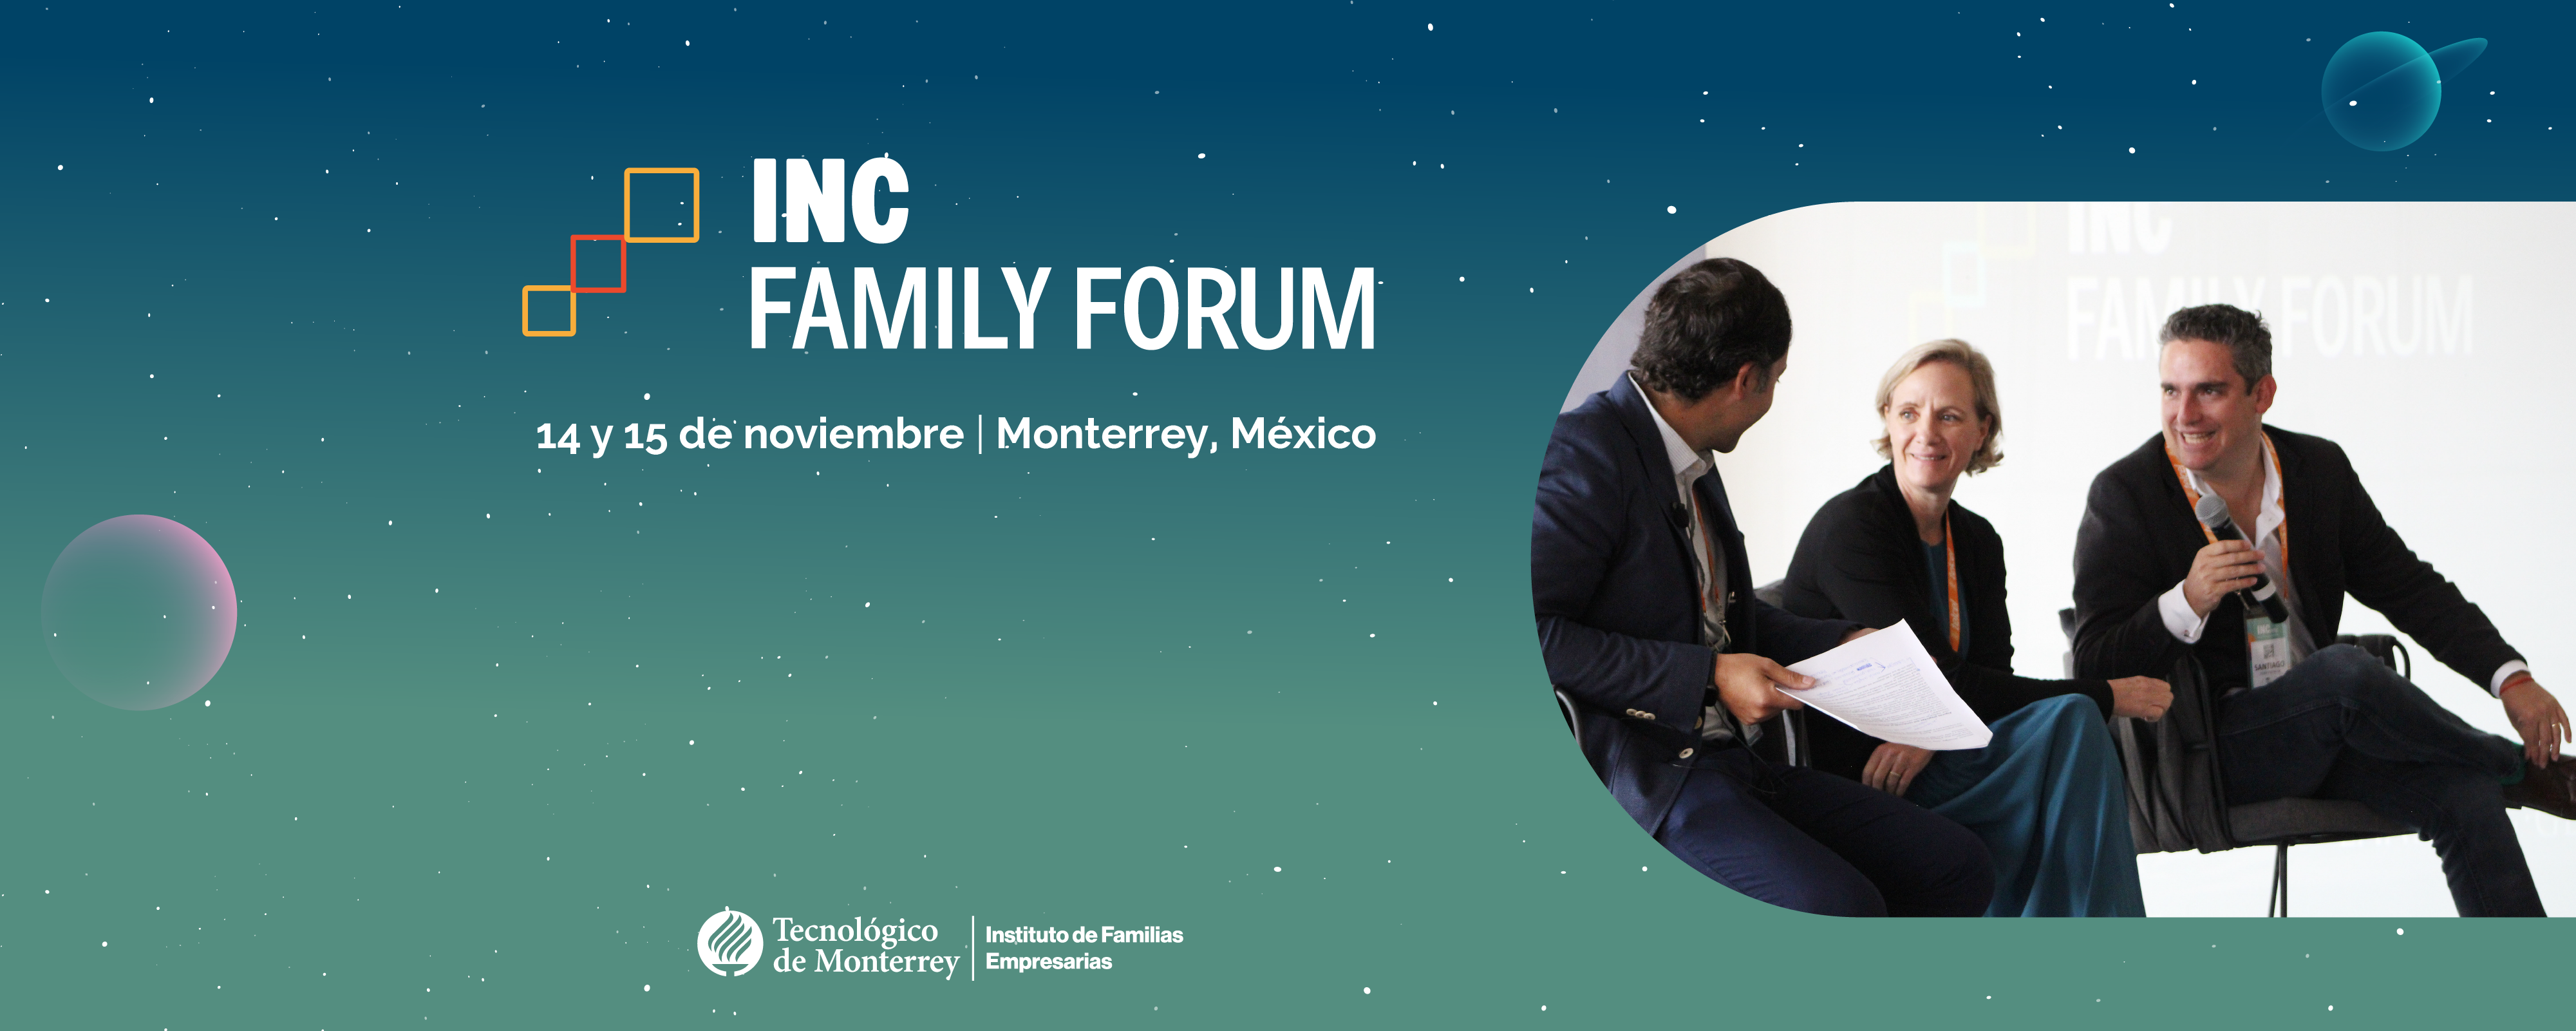 ¡Ven a conectar con las familias empresarias al INF Family Forum!